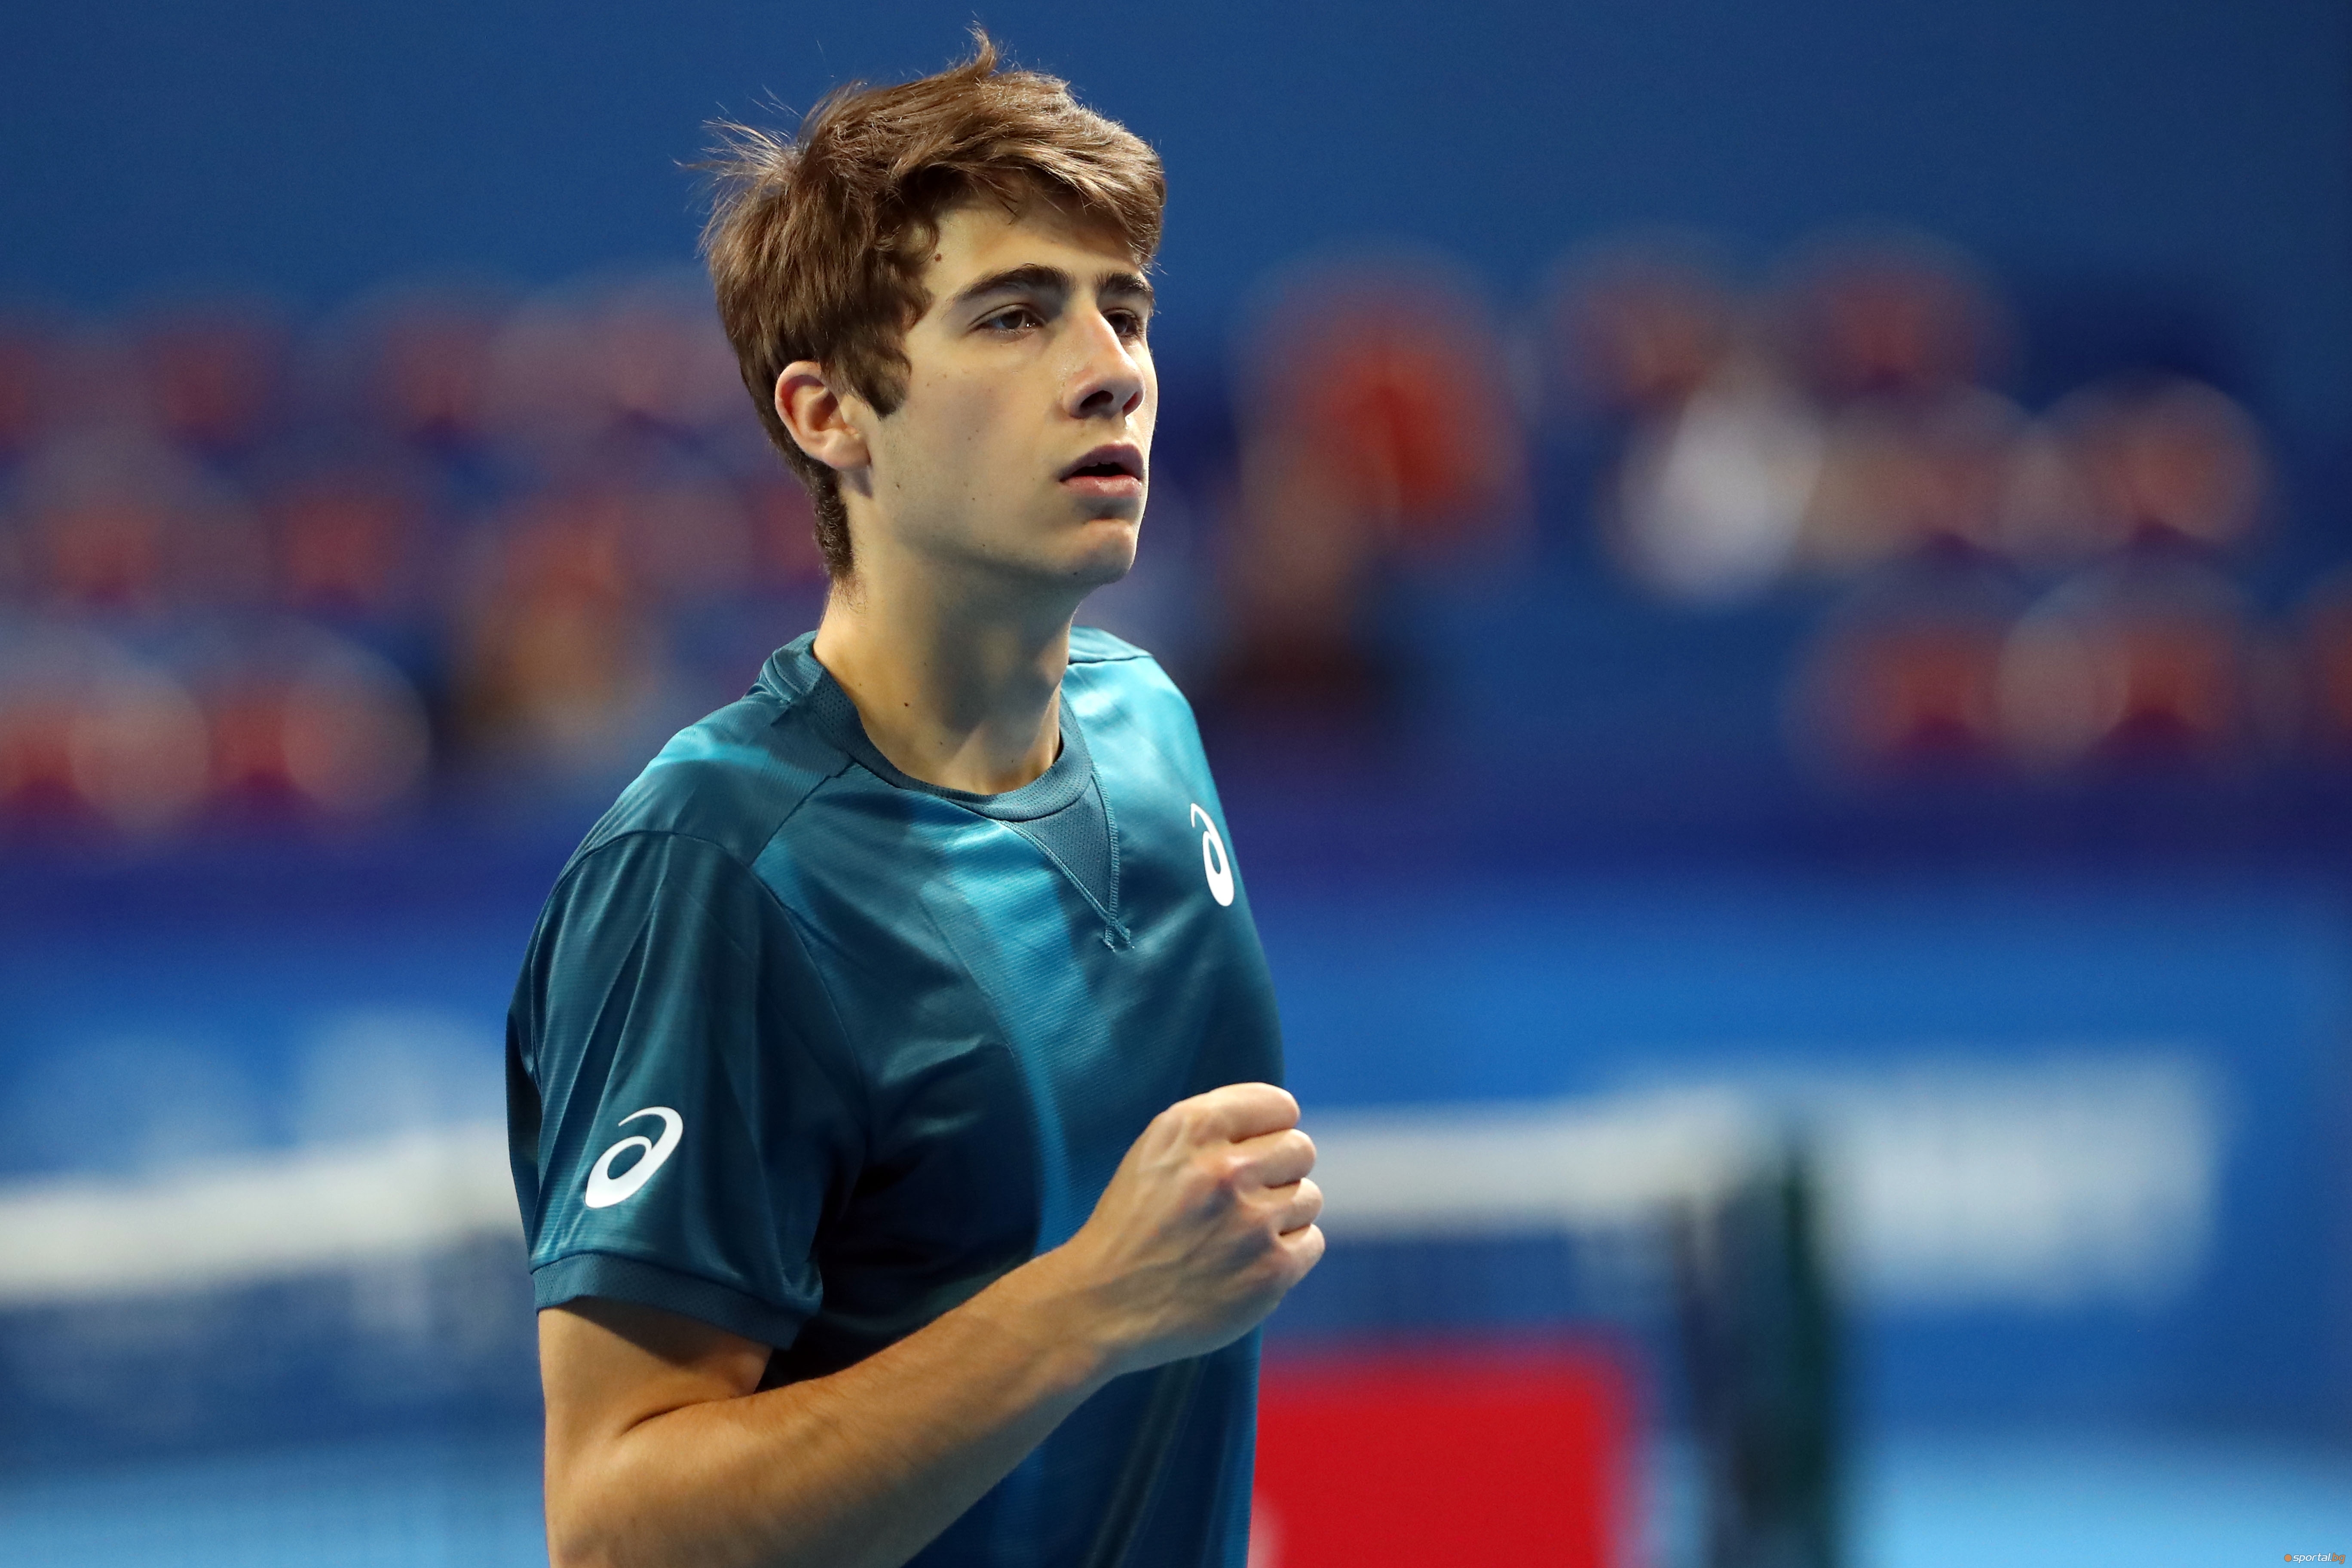 Държавният шампион по тенис в зала Александър Донски спечели титлата